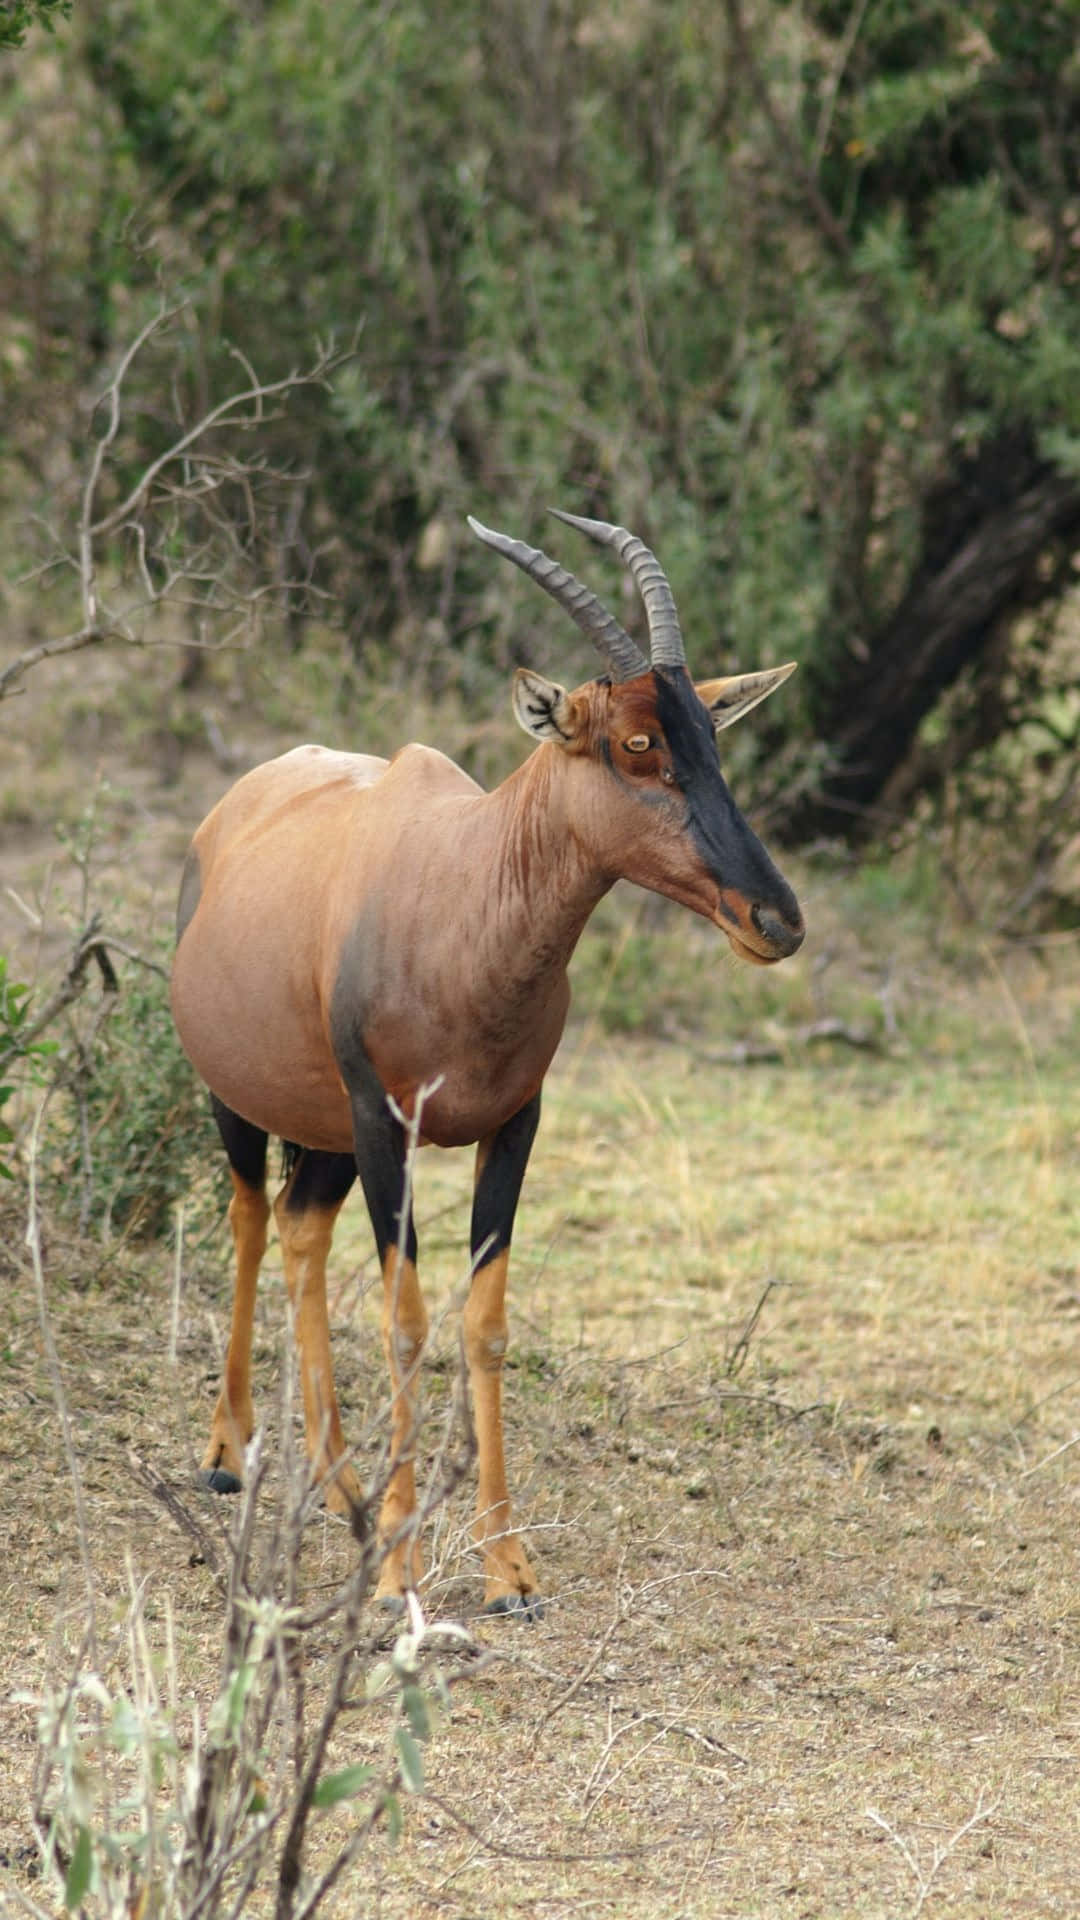 Topi Antelopein Savanna Habitat Wallpaper